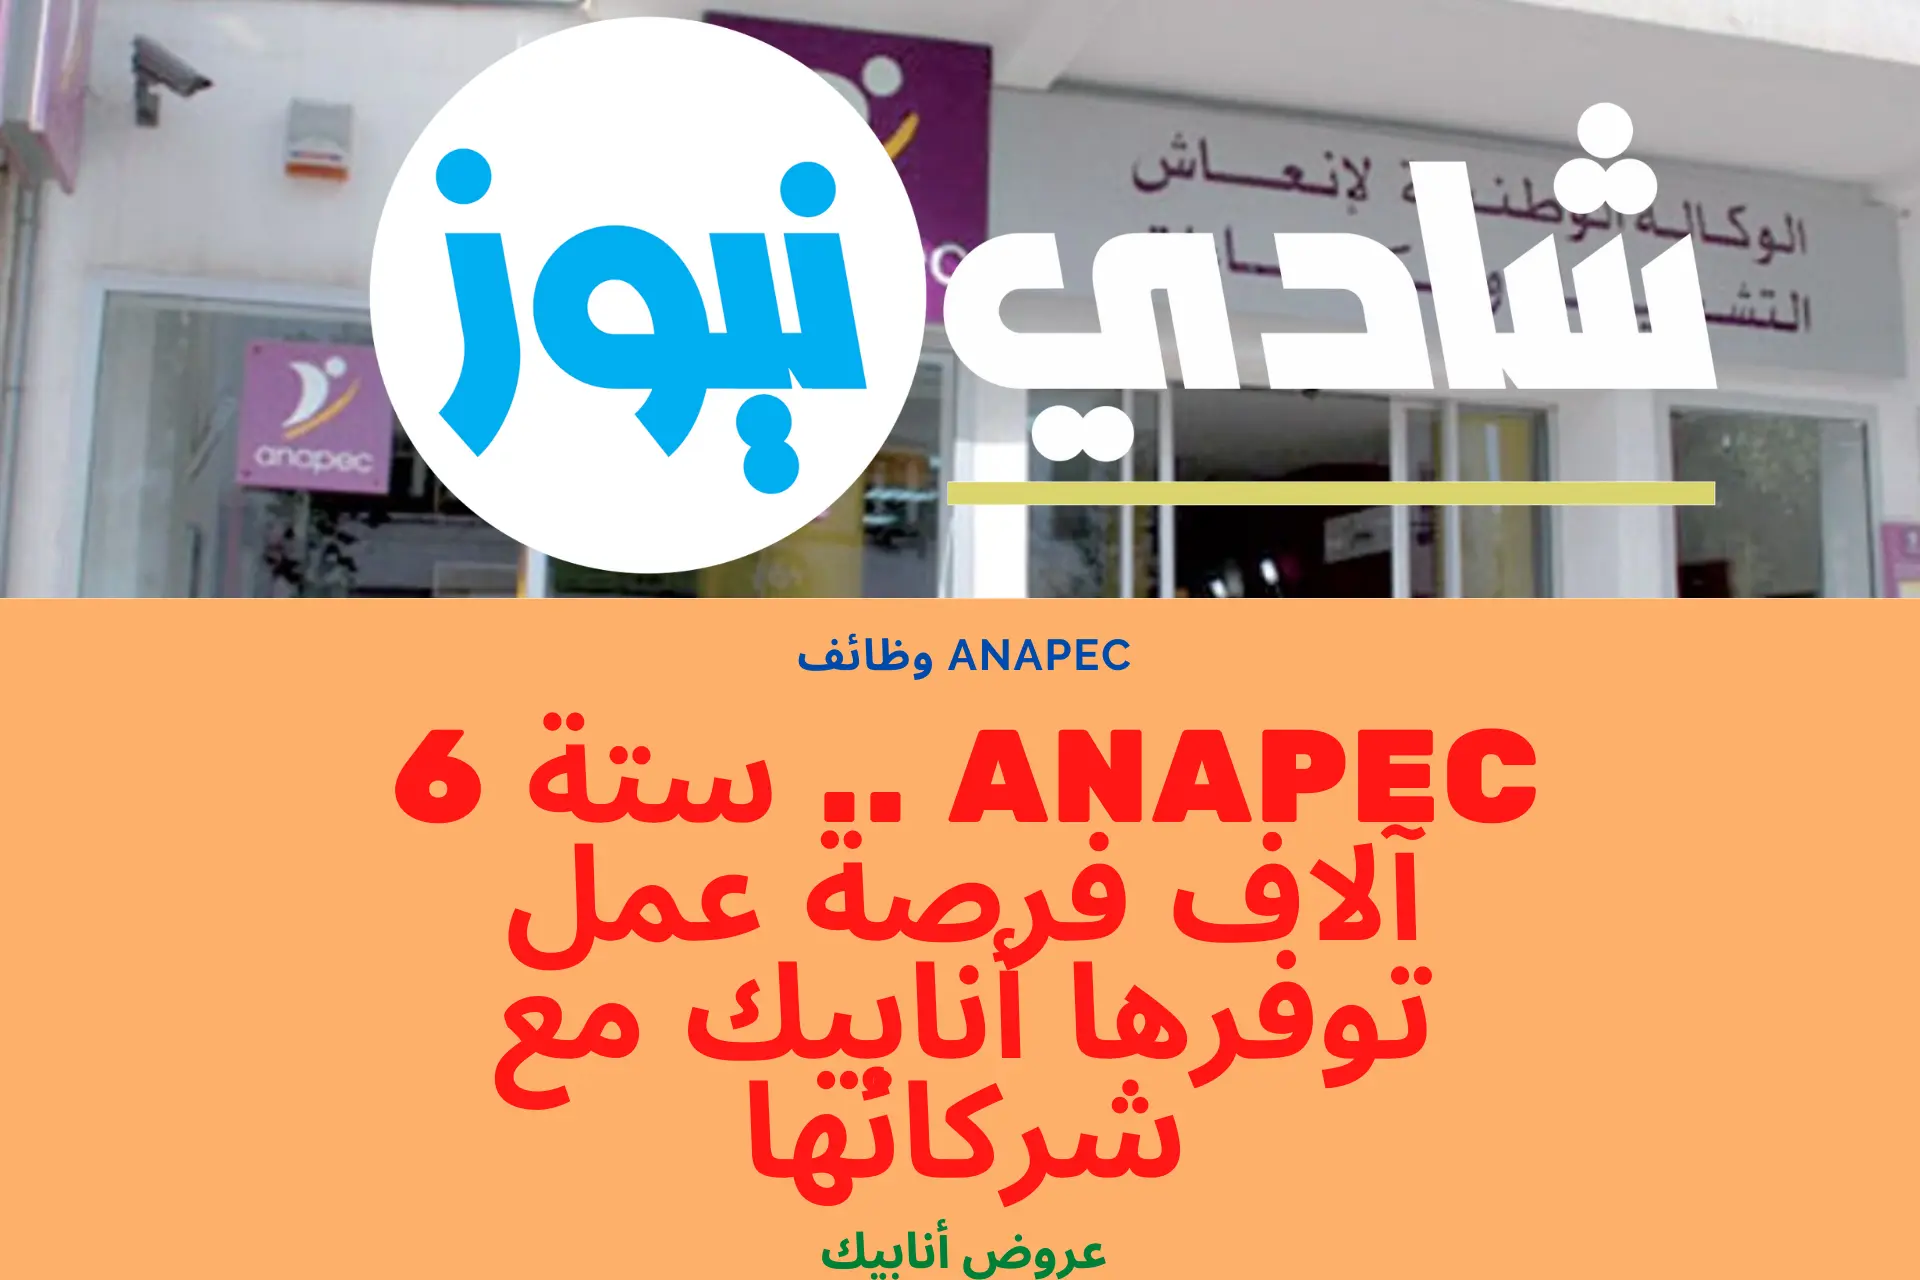 ANAPEC .. ستة 6 آلاف فرصة عمل توفرها أنابيك مع شركائها